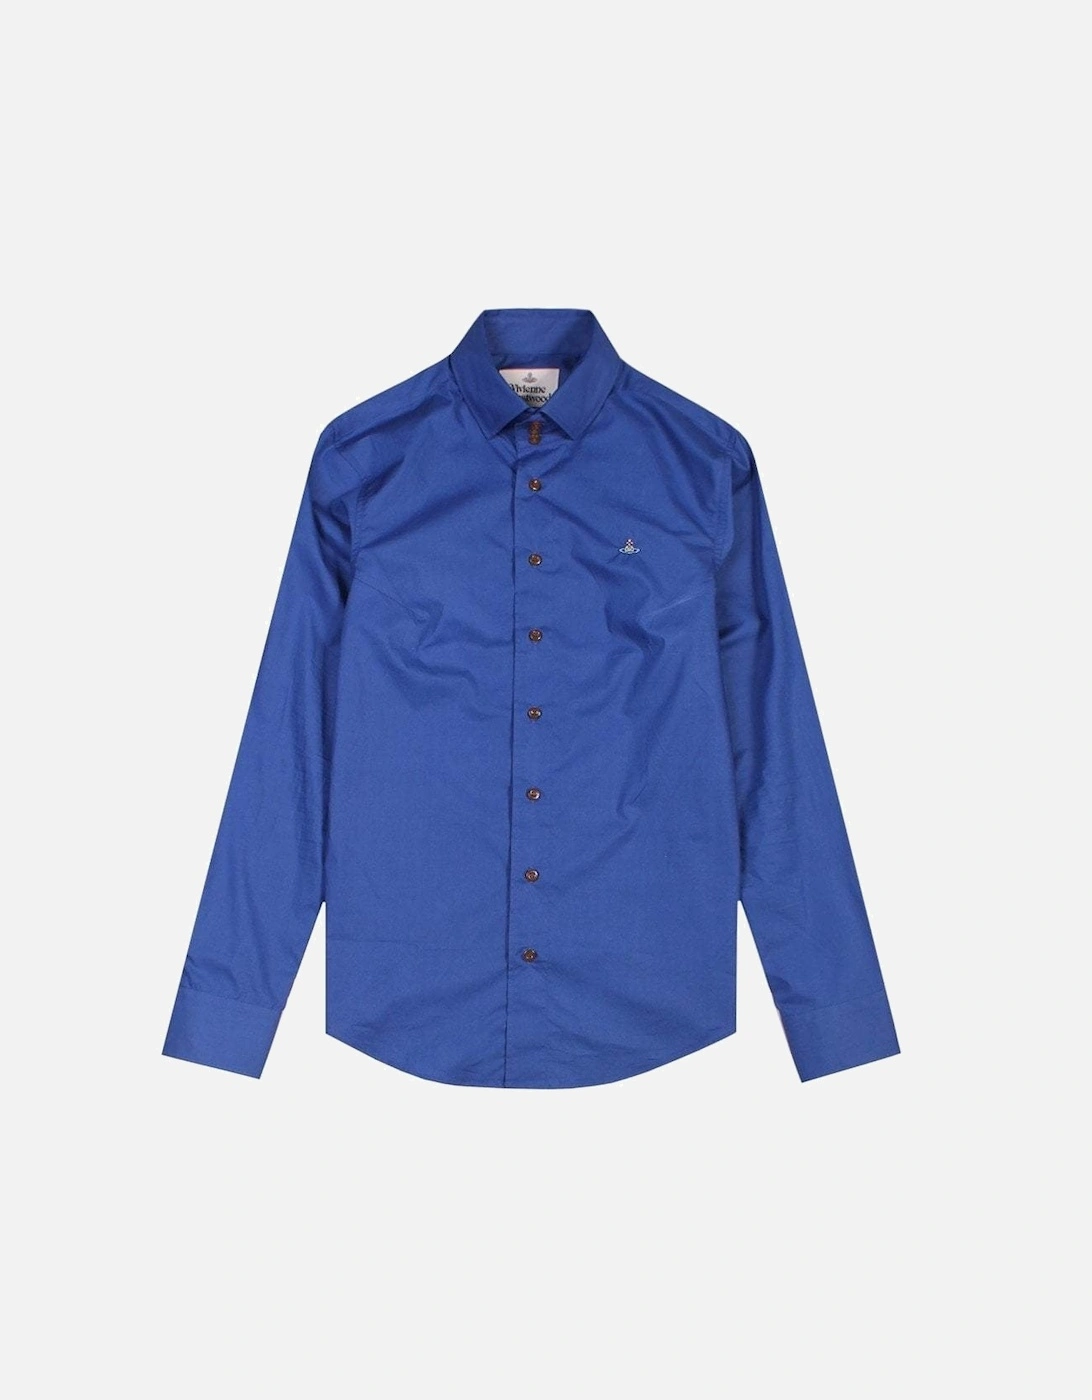 Men's Three Button Shirt Blue, 2 of 1